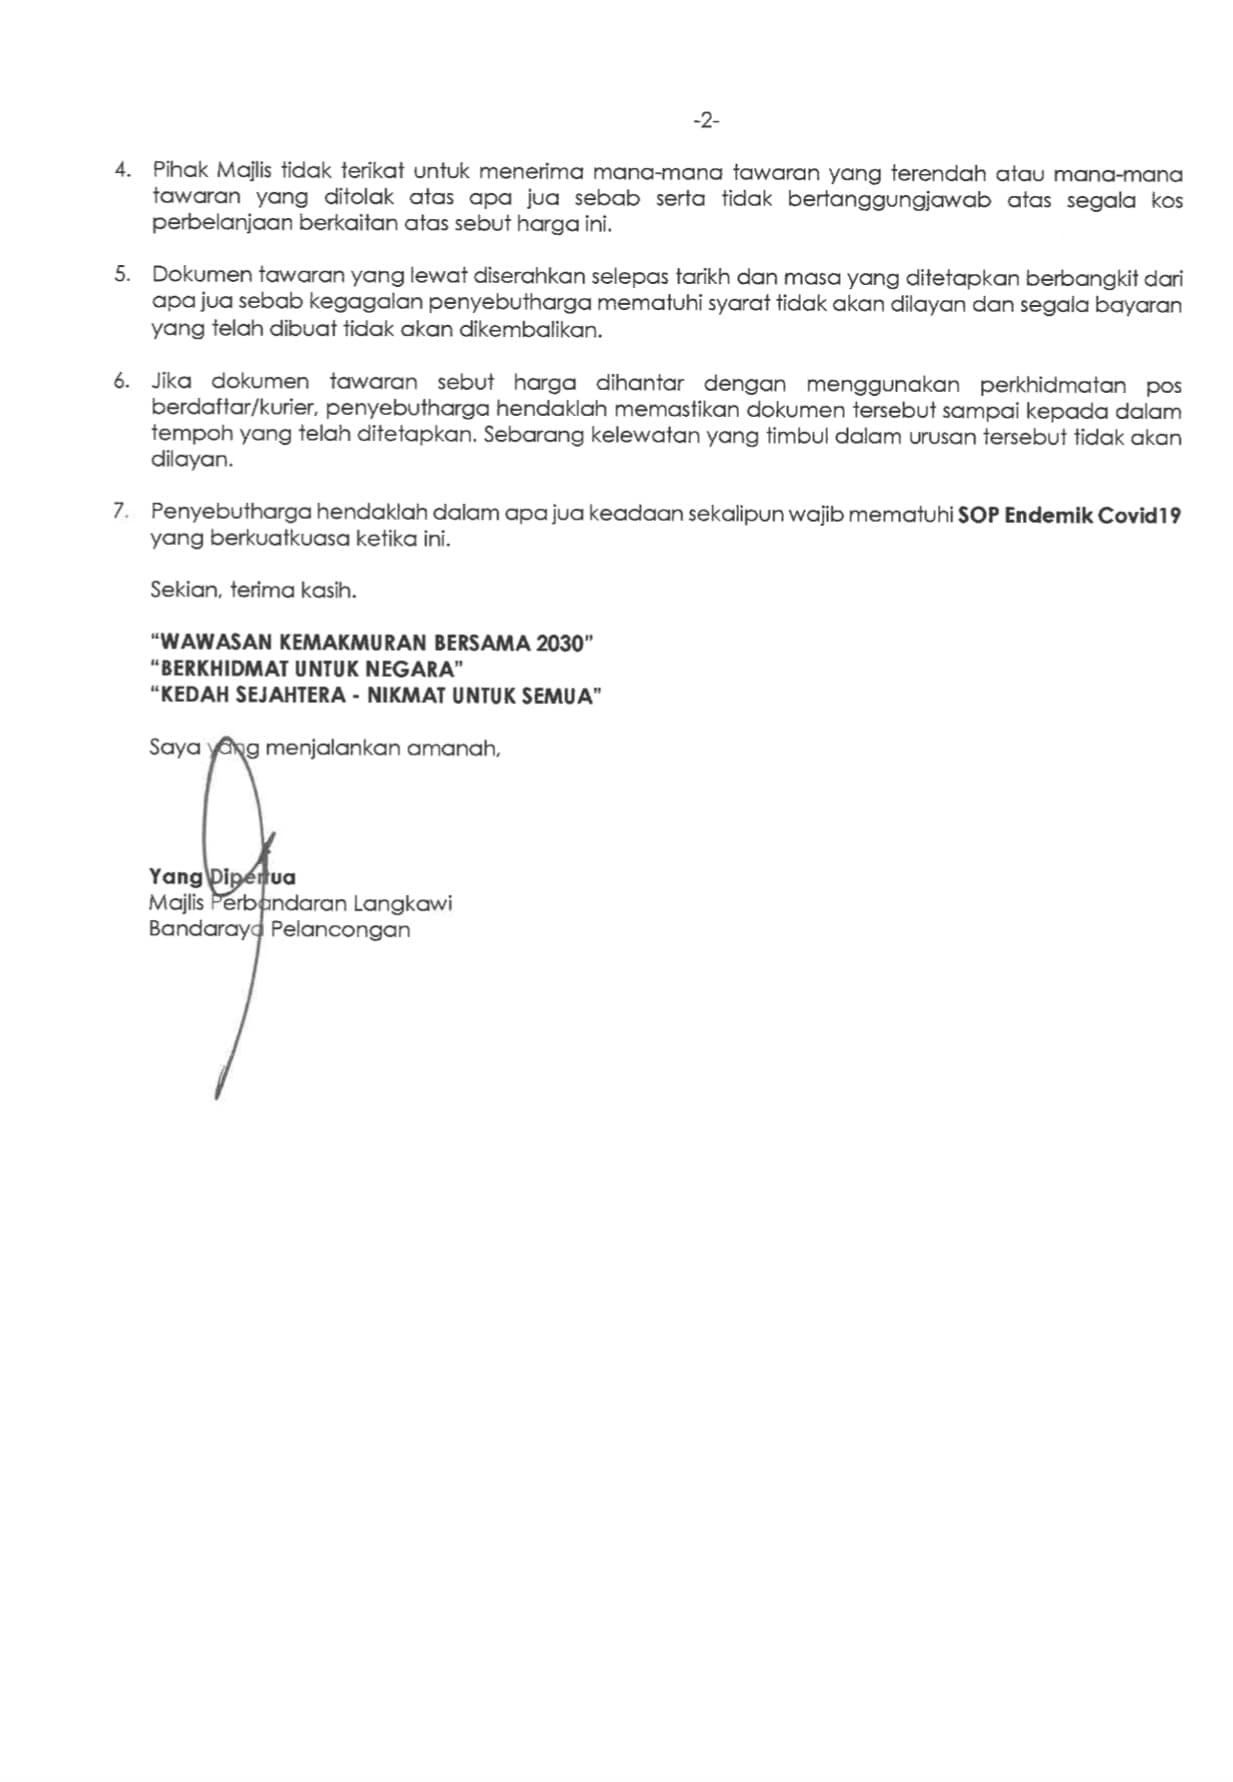 Kenyataan Tawaran Sebut Harga Portal Pbt Kedah